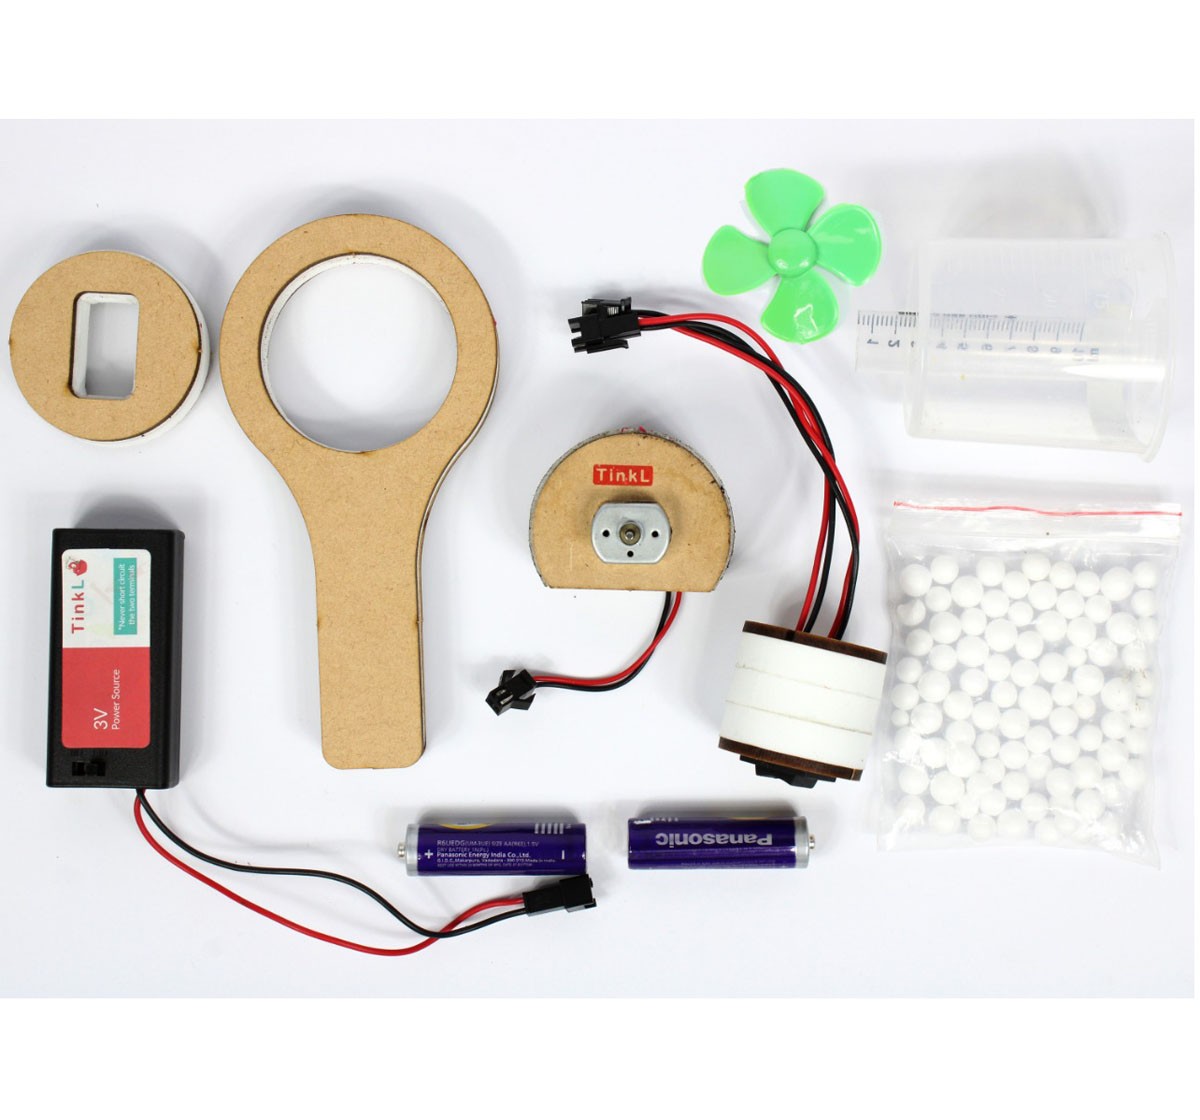 Top Bright DIY Mini Vaccum cleaner STEM Toy Multicolour 5Y+